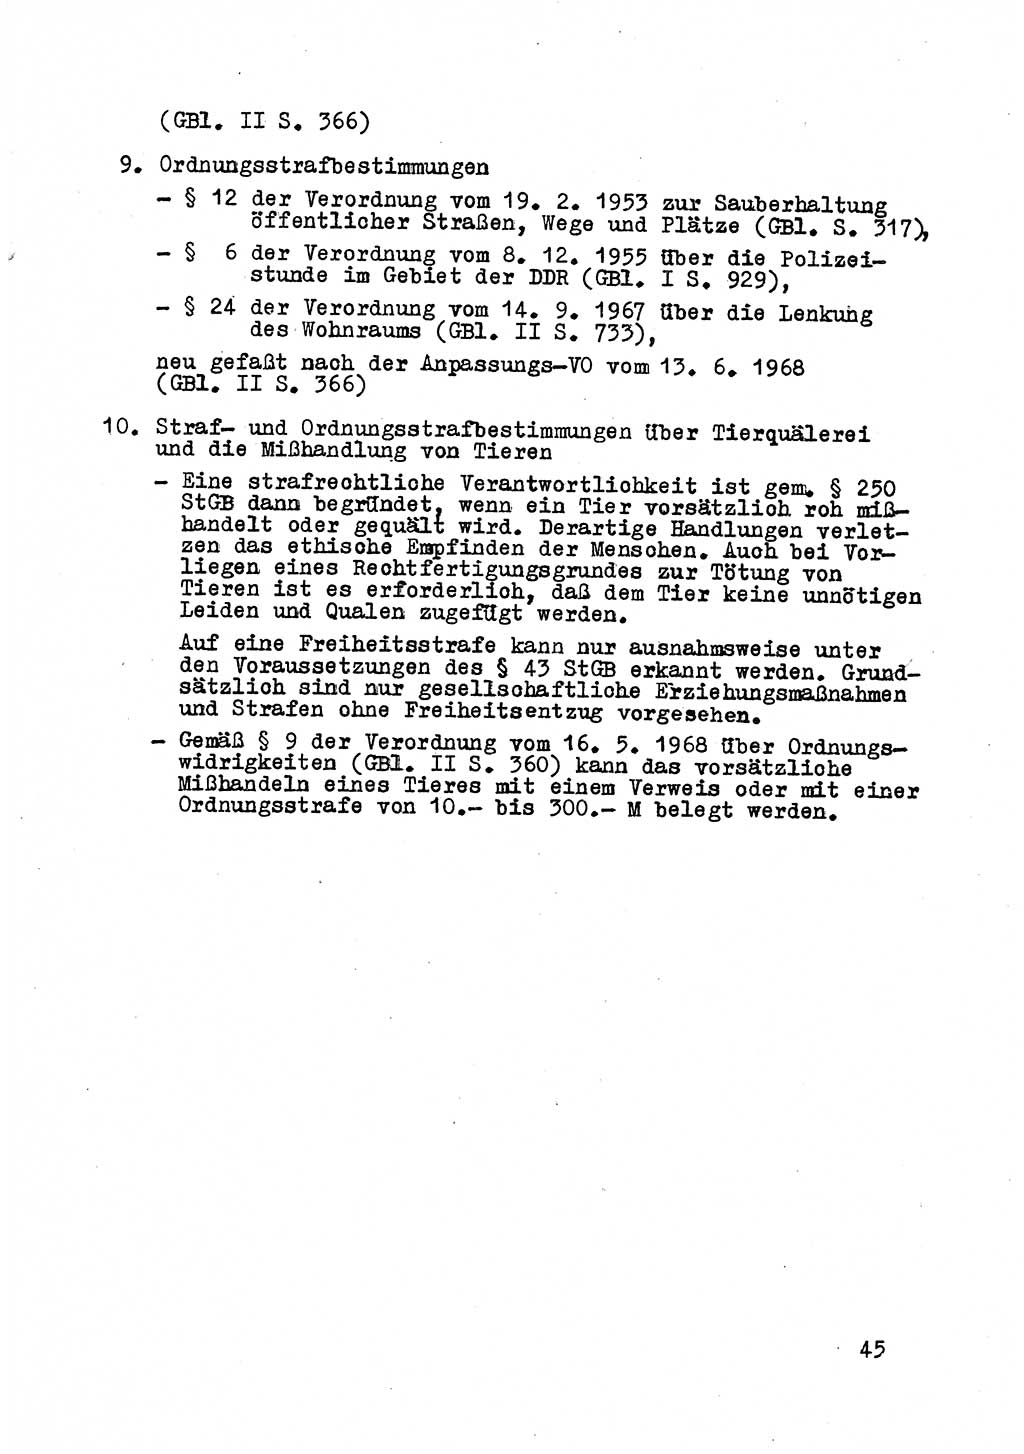 Strafrecht der DDR (Deutsche Demokratische Republik), Besonderer Teil, Lehrmaterial, Heft 8 1970, Seite 45 (Strafr. DDR BT Lehrmat. H. 8 1970, S. 45)